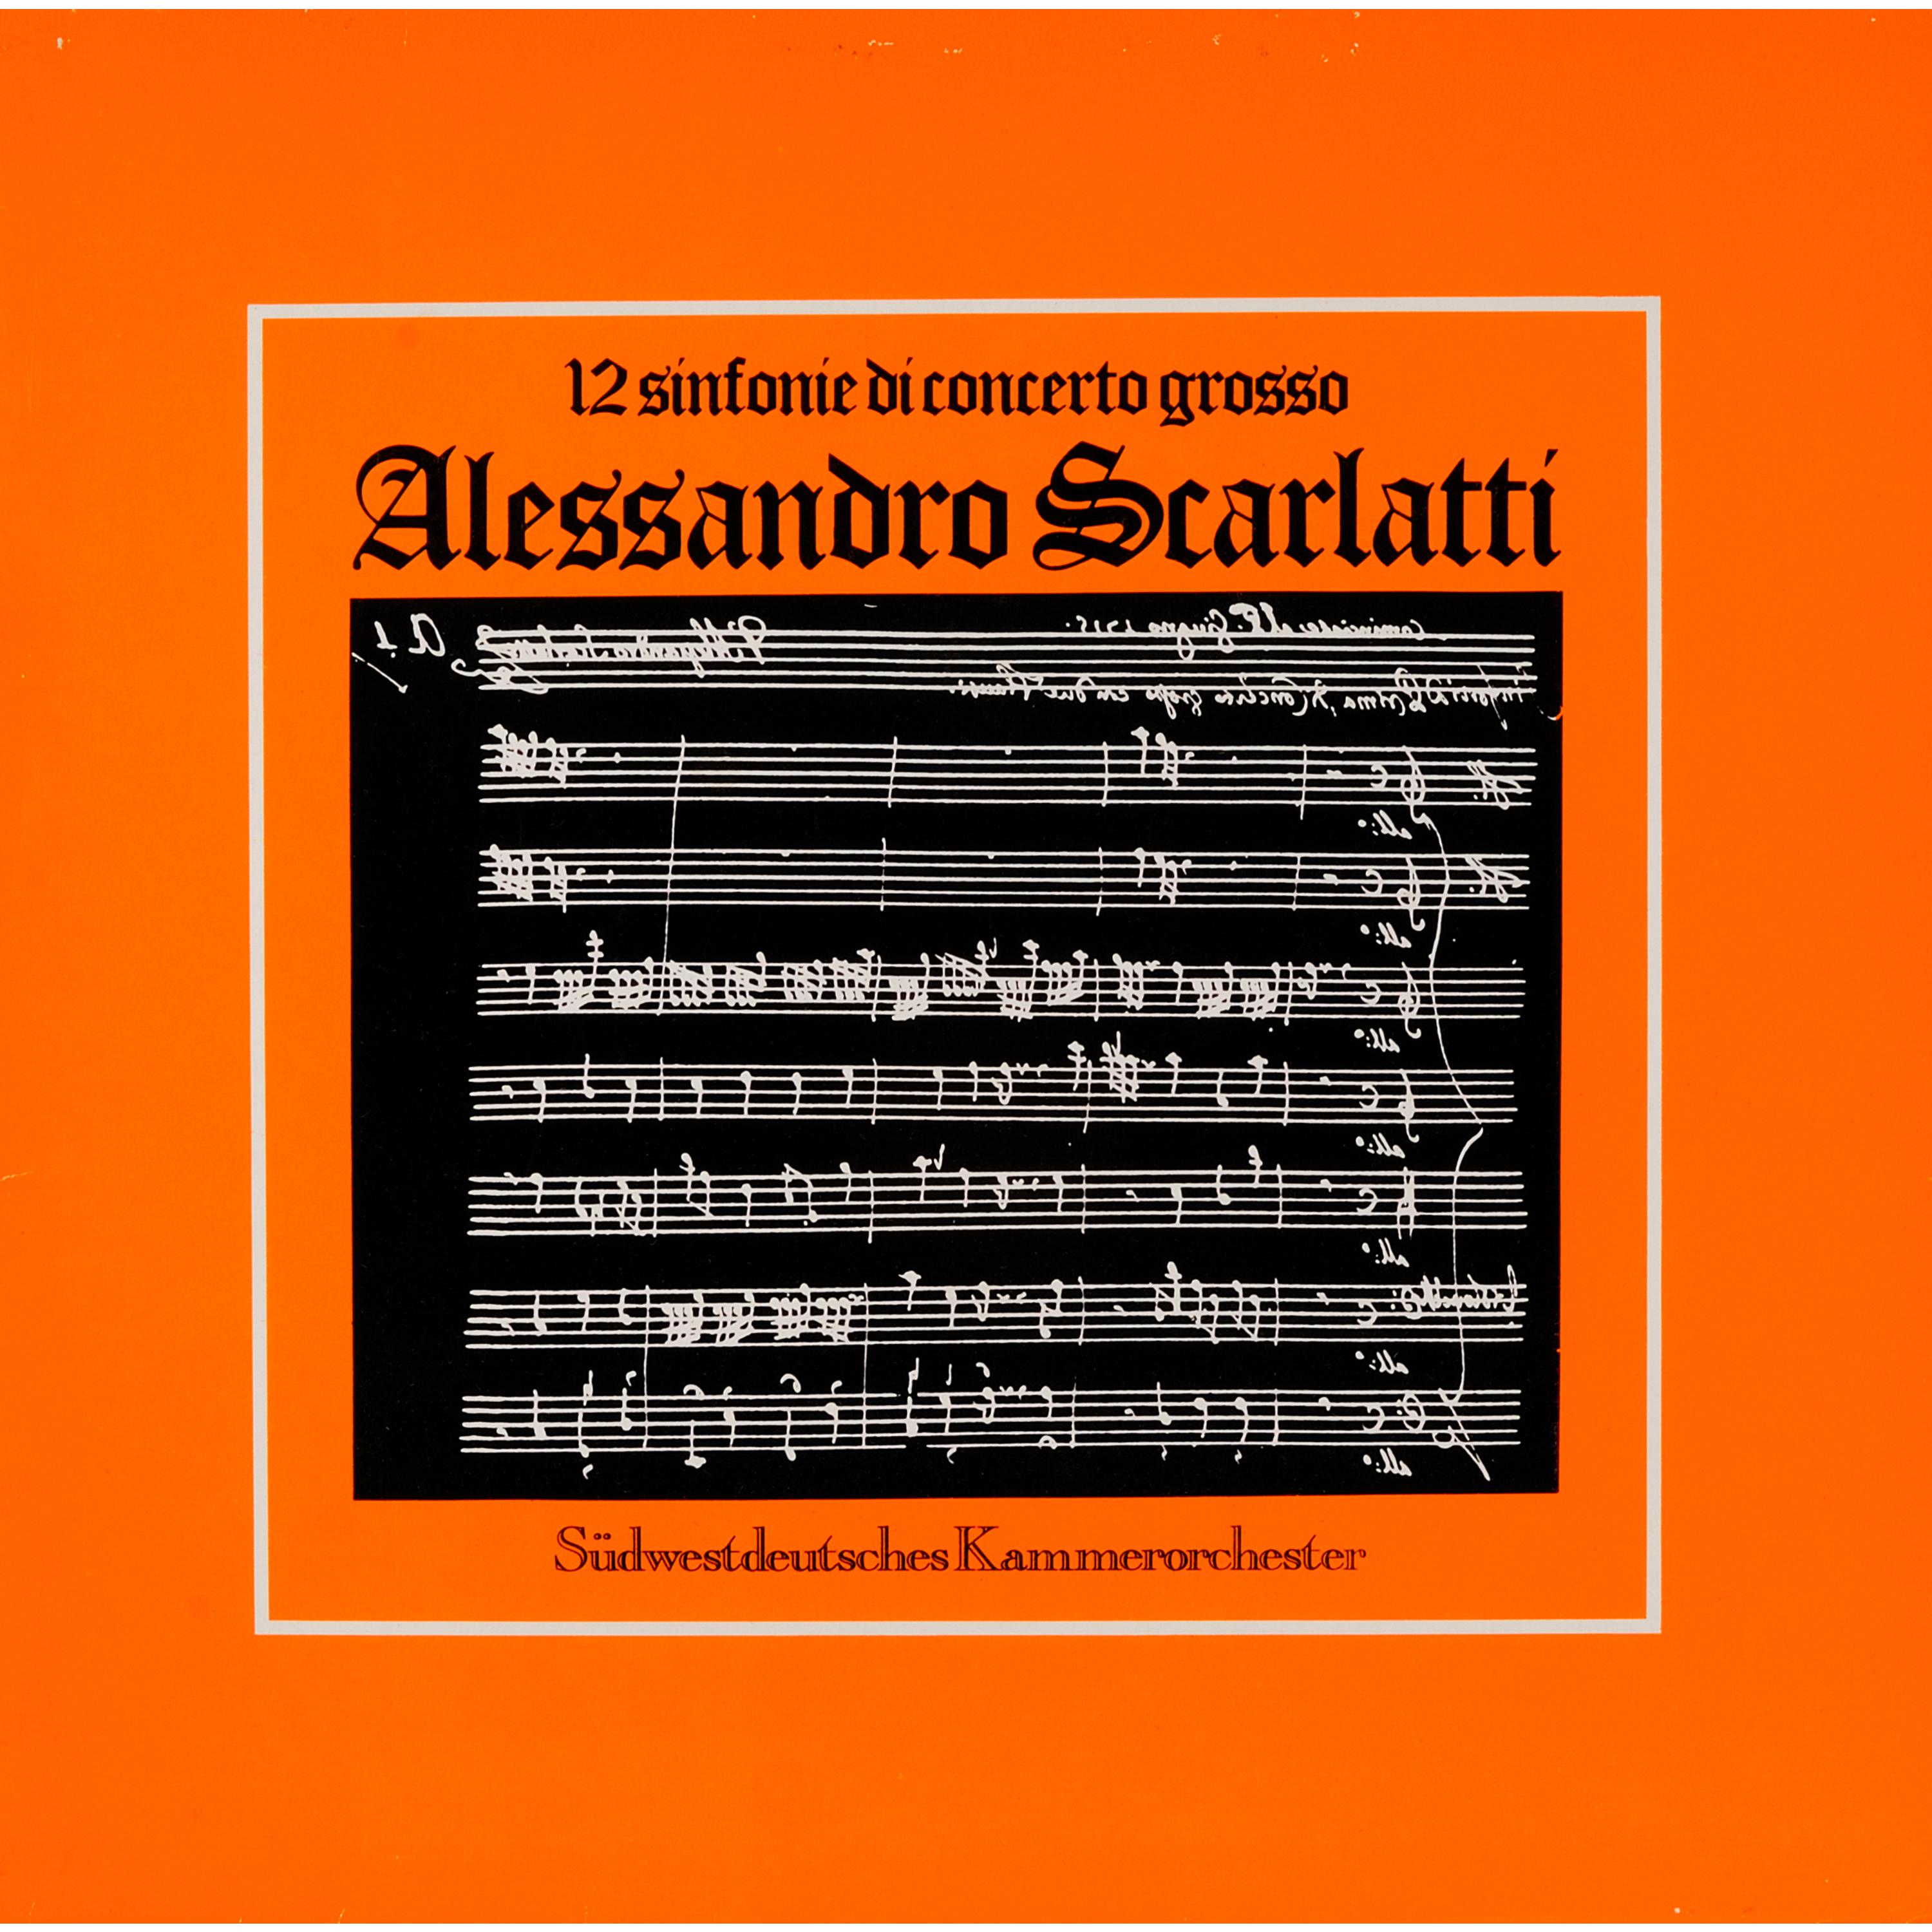 Sinfonia di concerto grosso No. 11 in C Major: Spirituoso - Lento - Allegro - Adagio - Allegro